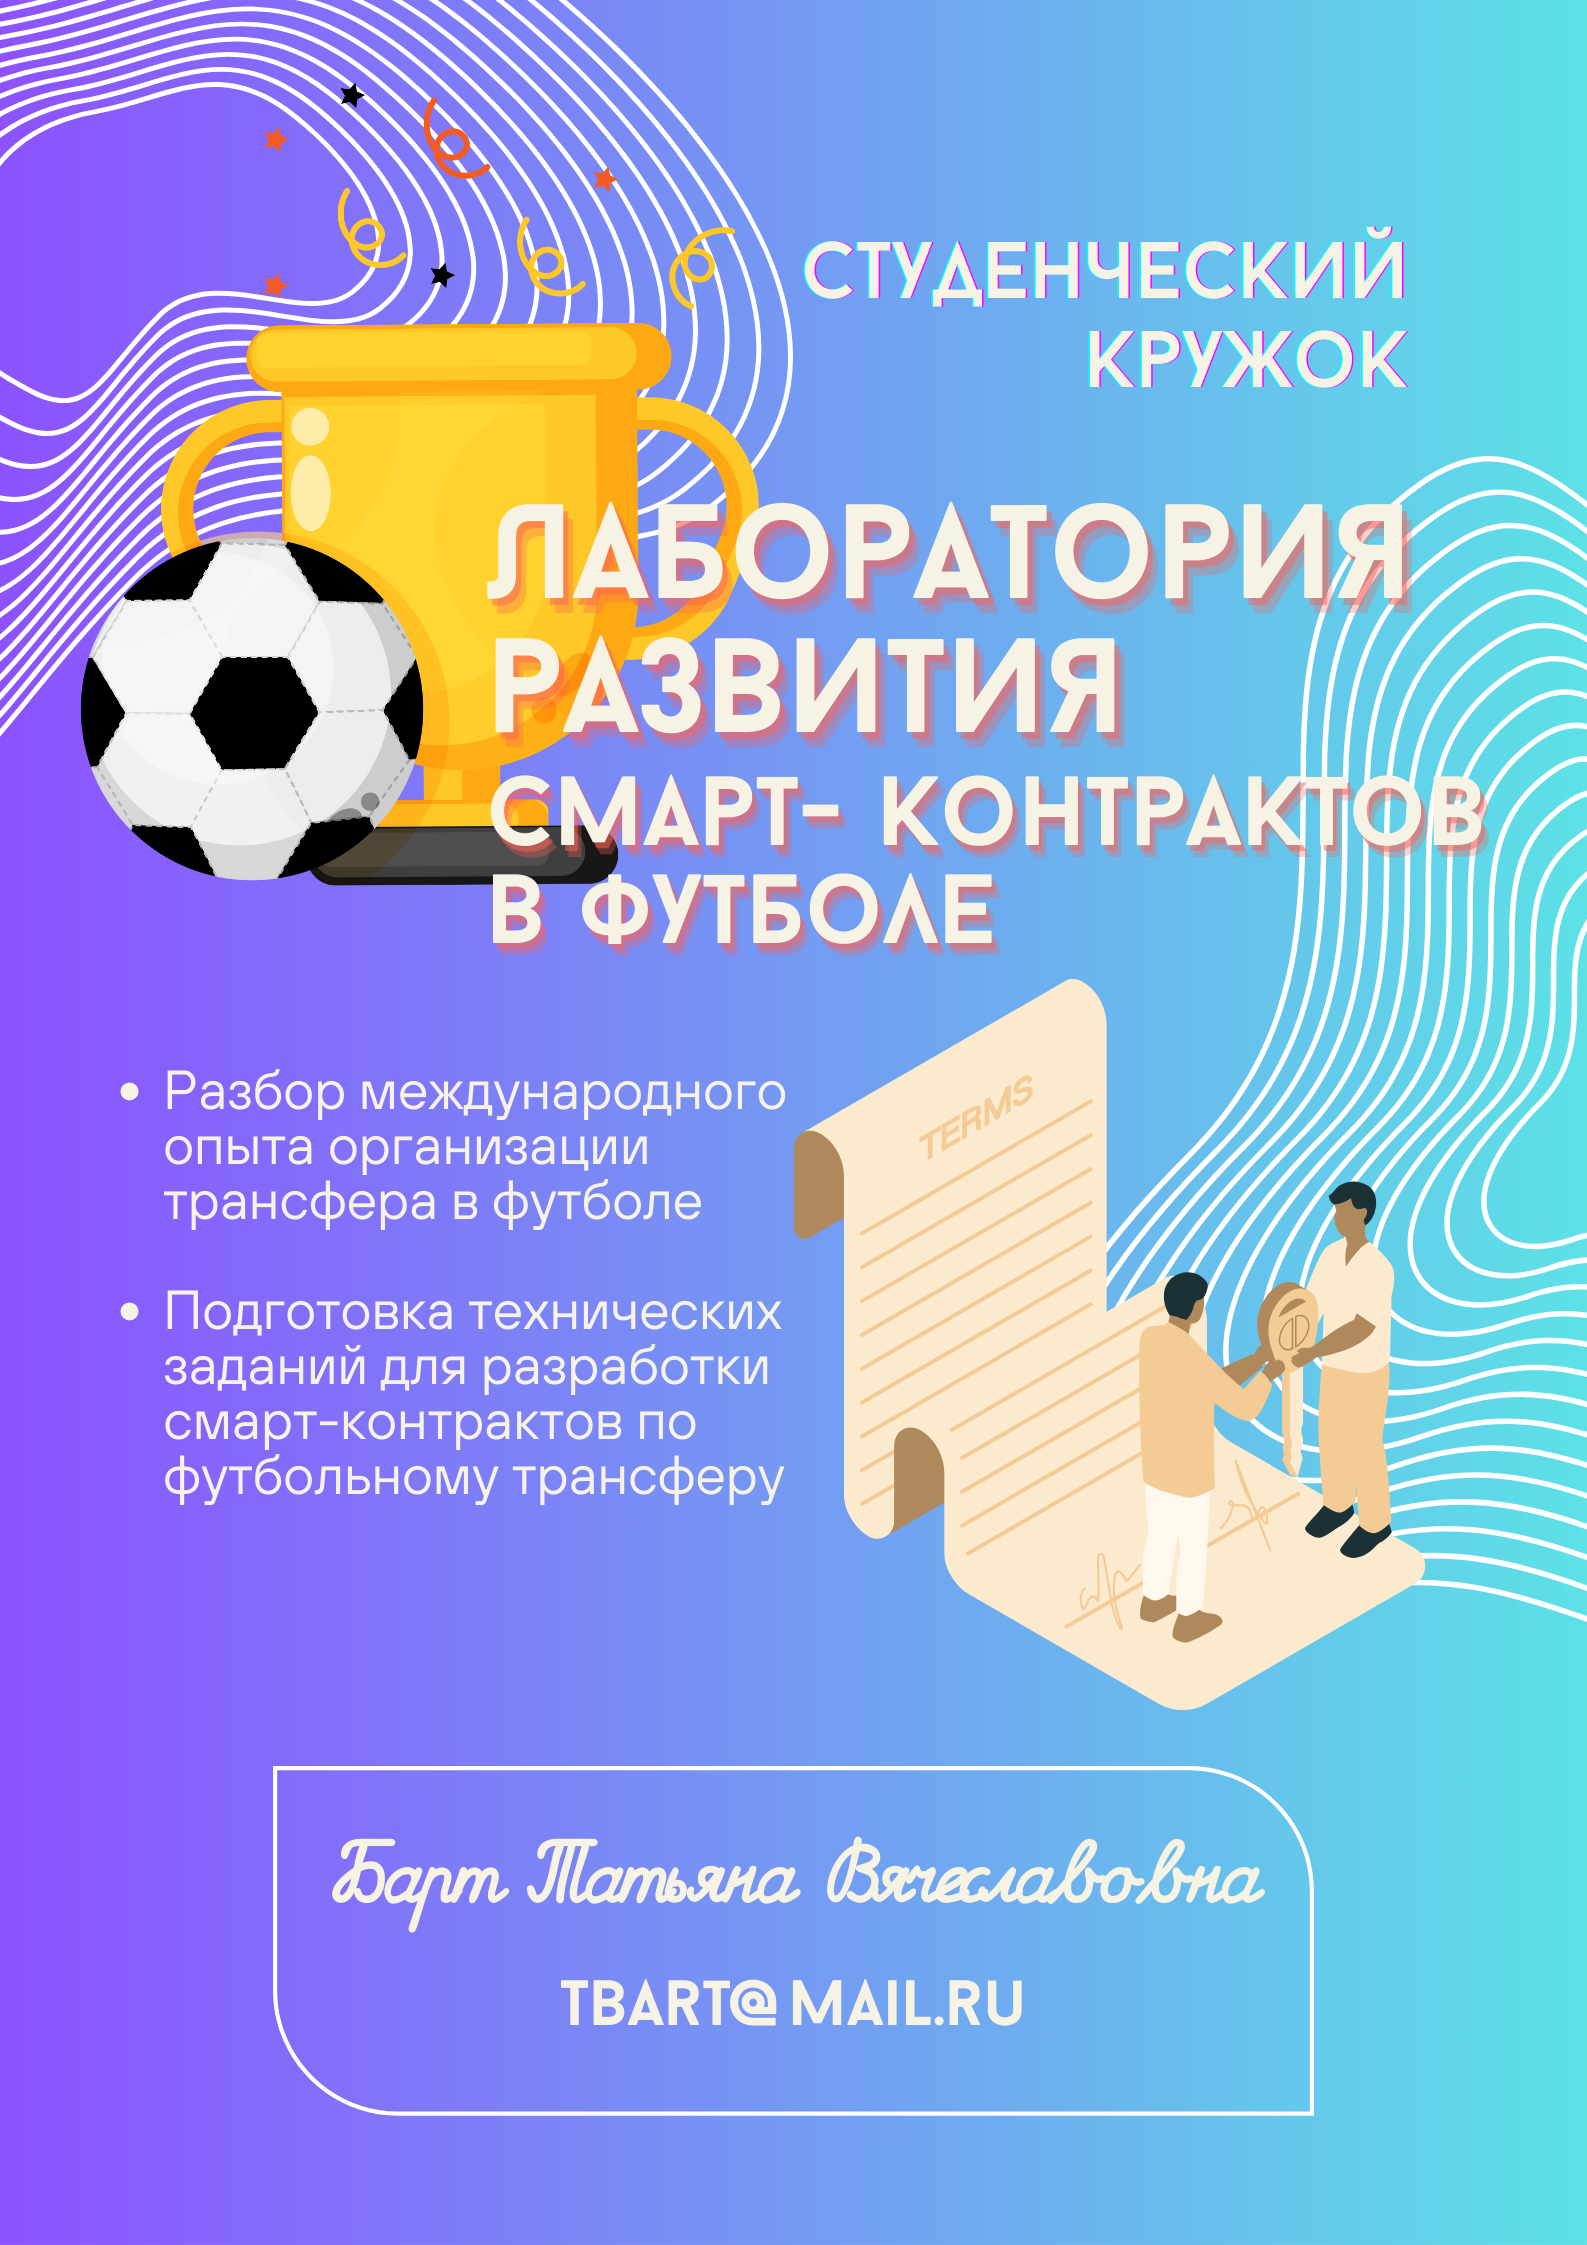 Лаборатория развития смарт-контрактов в футболе.png